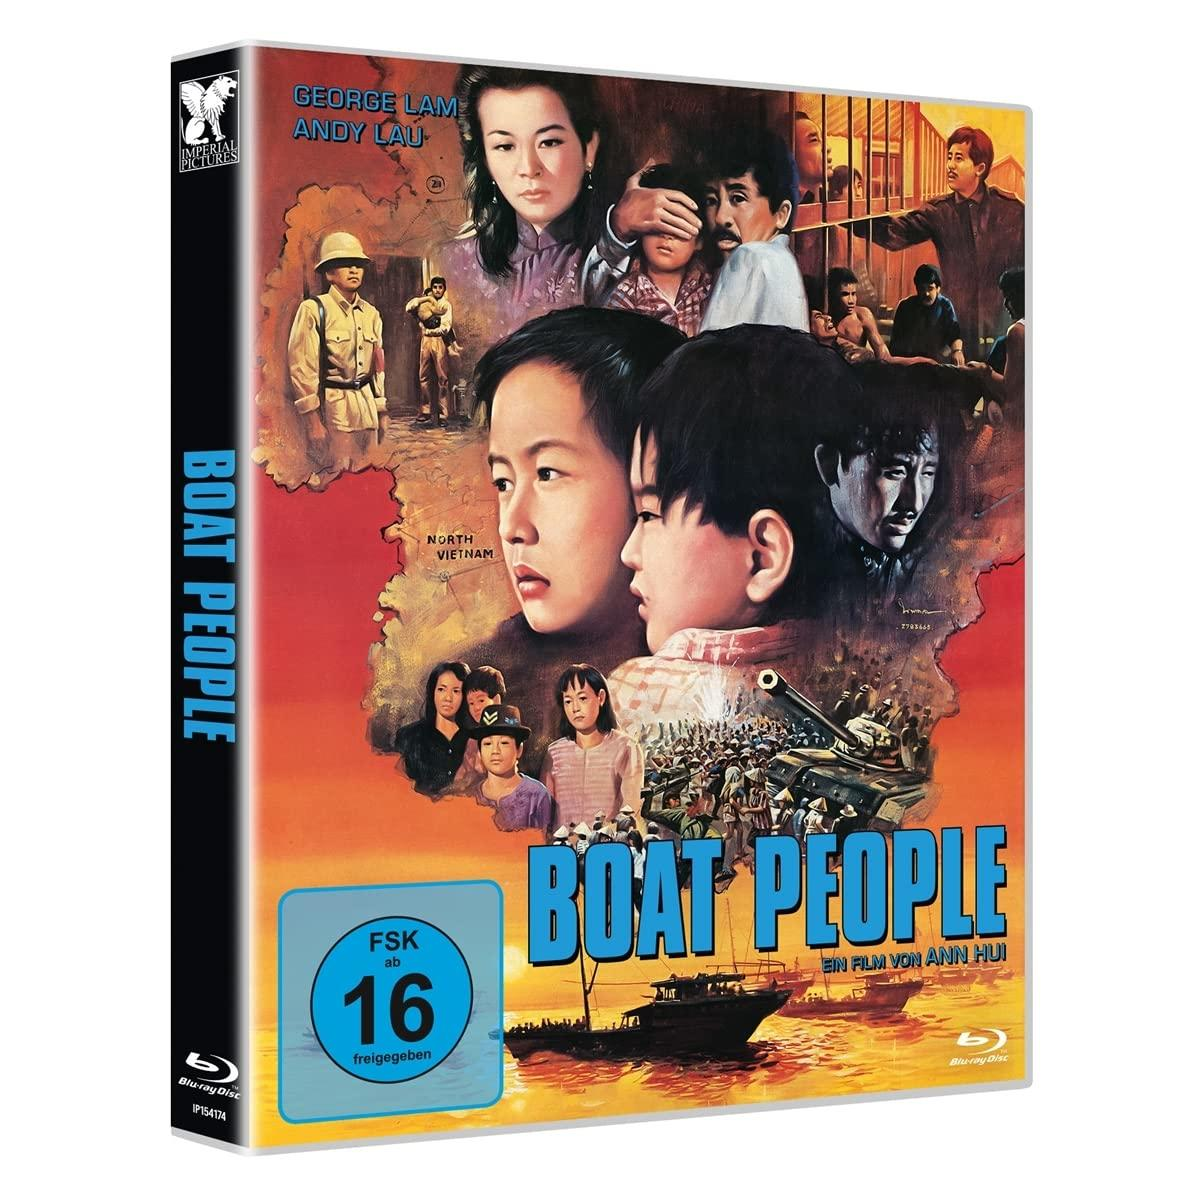 People Blu-ray Boat